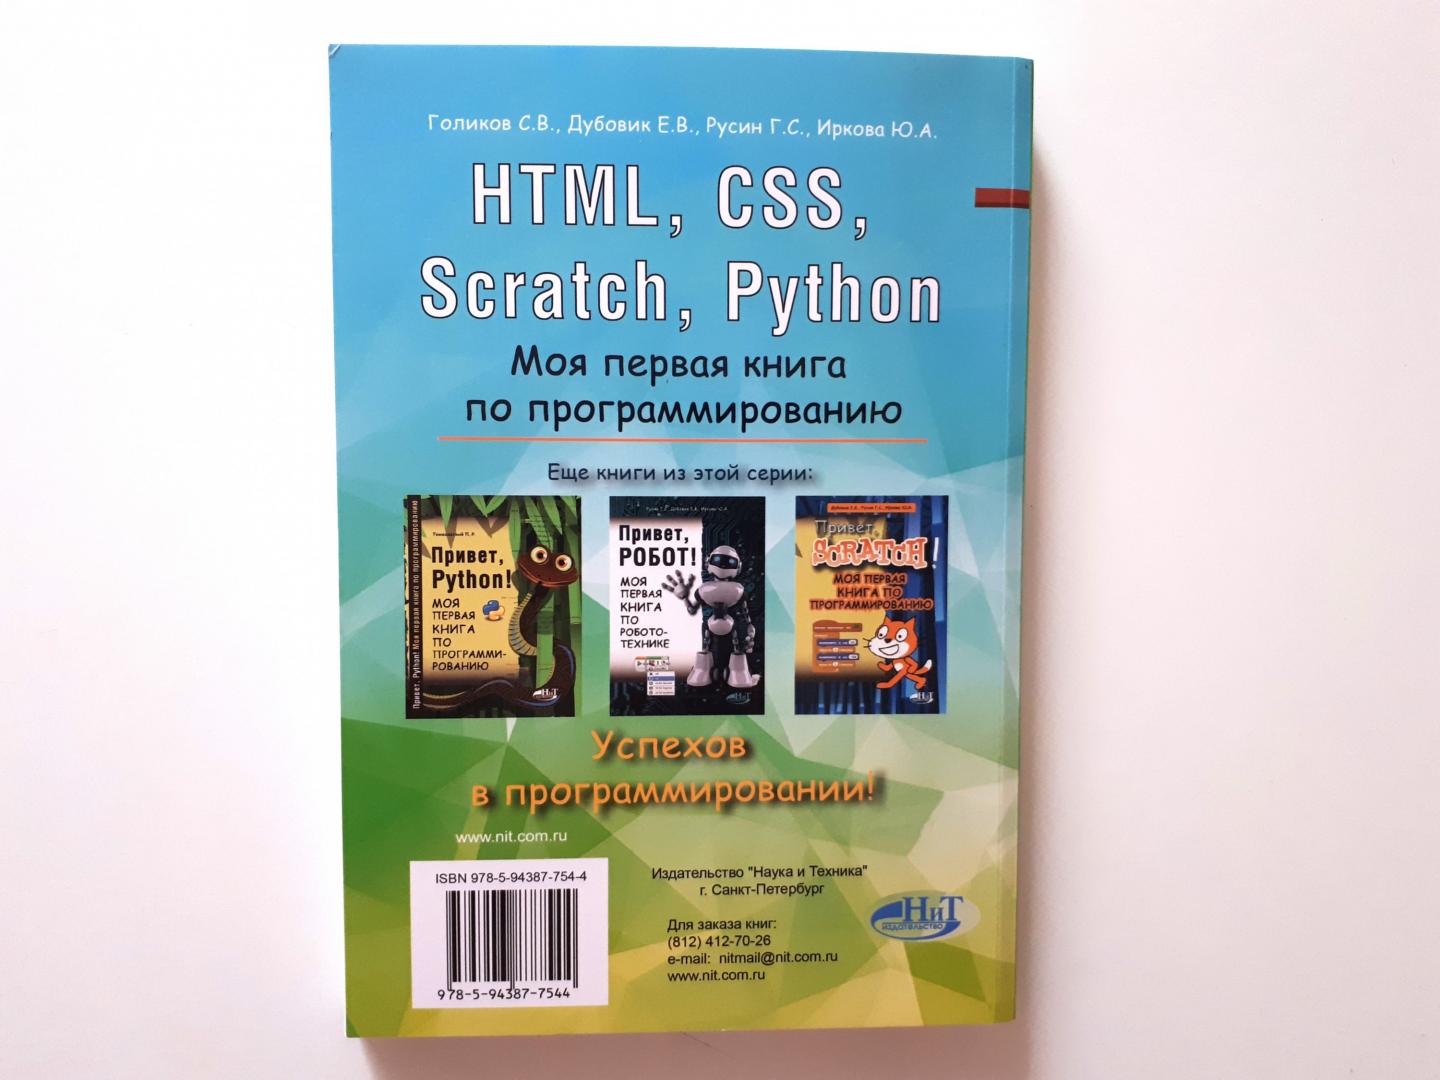 Иллюстрация 4 из 11 для HTML, CSS, Scratch, Python. Моя первая книга - Дубовик, Русин, Голиков | Лабиринт - книги. Источник: Лабиринт